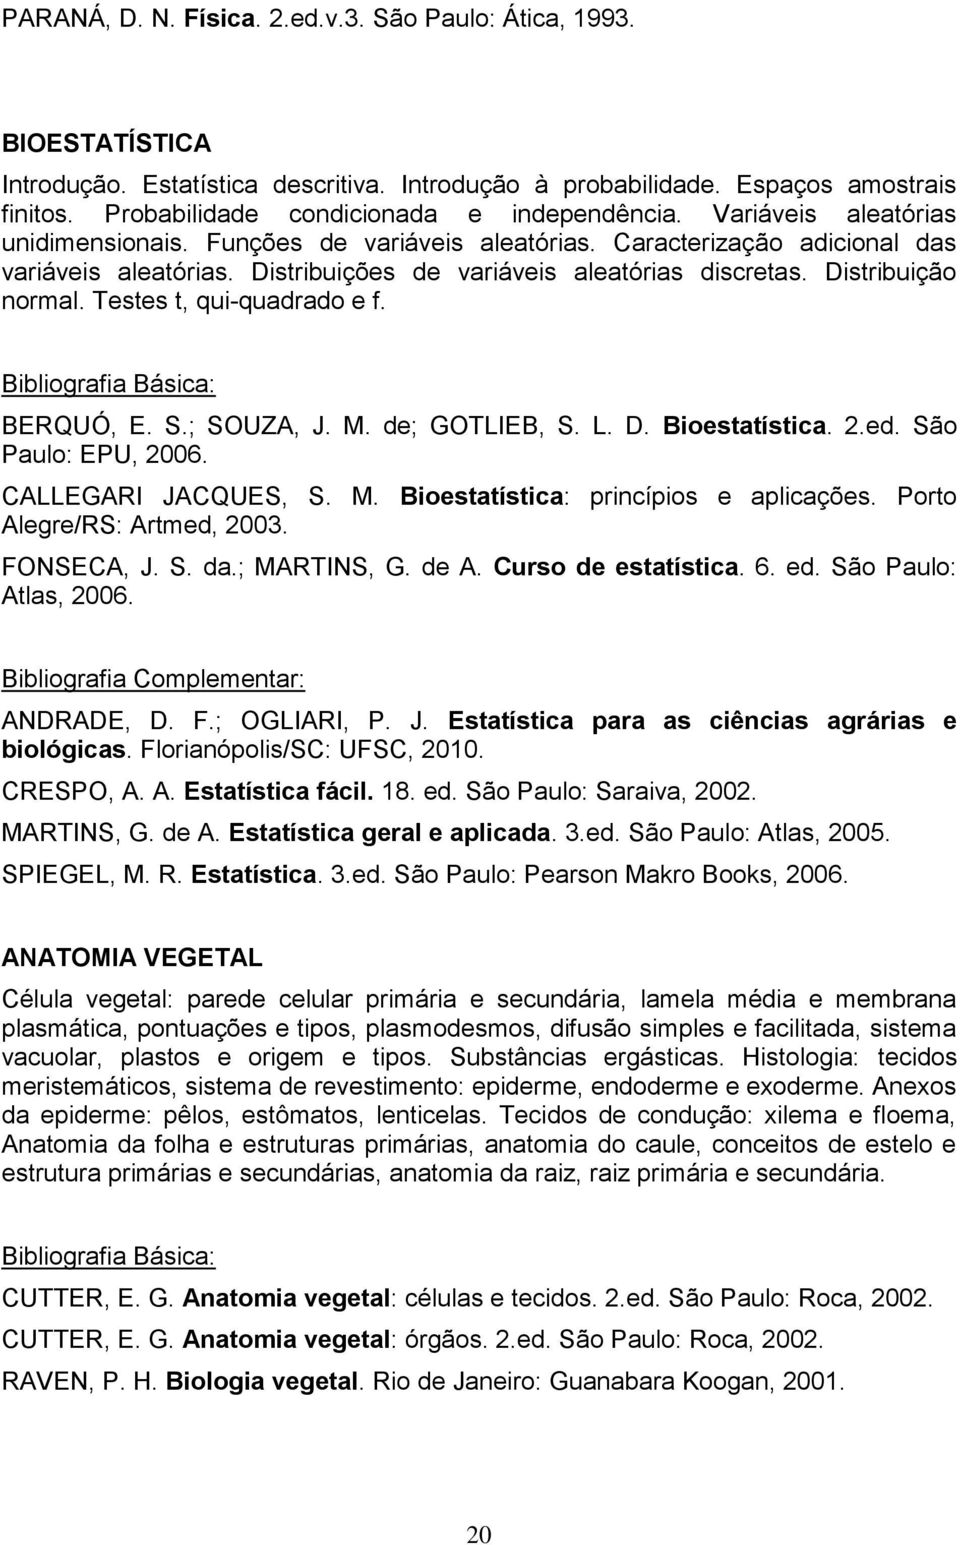 Distribuições de variáveis aleatórias discretas. Distribuição normal. Testes t, qui-quadrado e f. BERQUÓ, E. S.; SOUZA, J. M. de; GOTLIEB, S. L. D. Bioestatística. 2.ed. São Paulo: EPU, 2006.